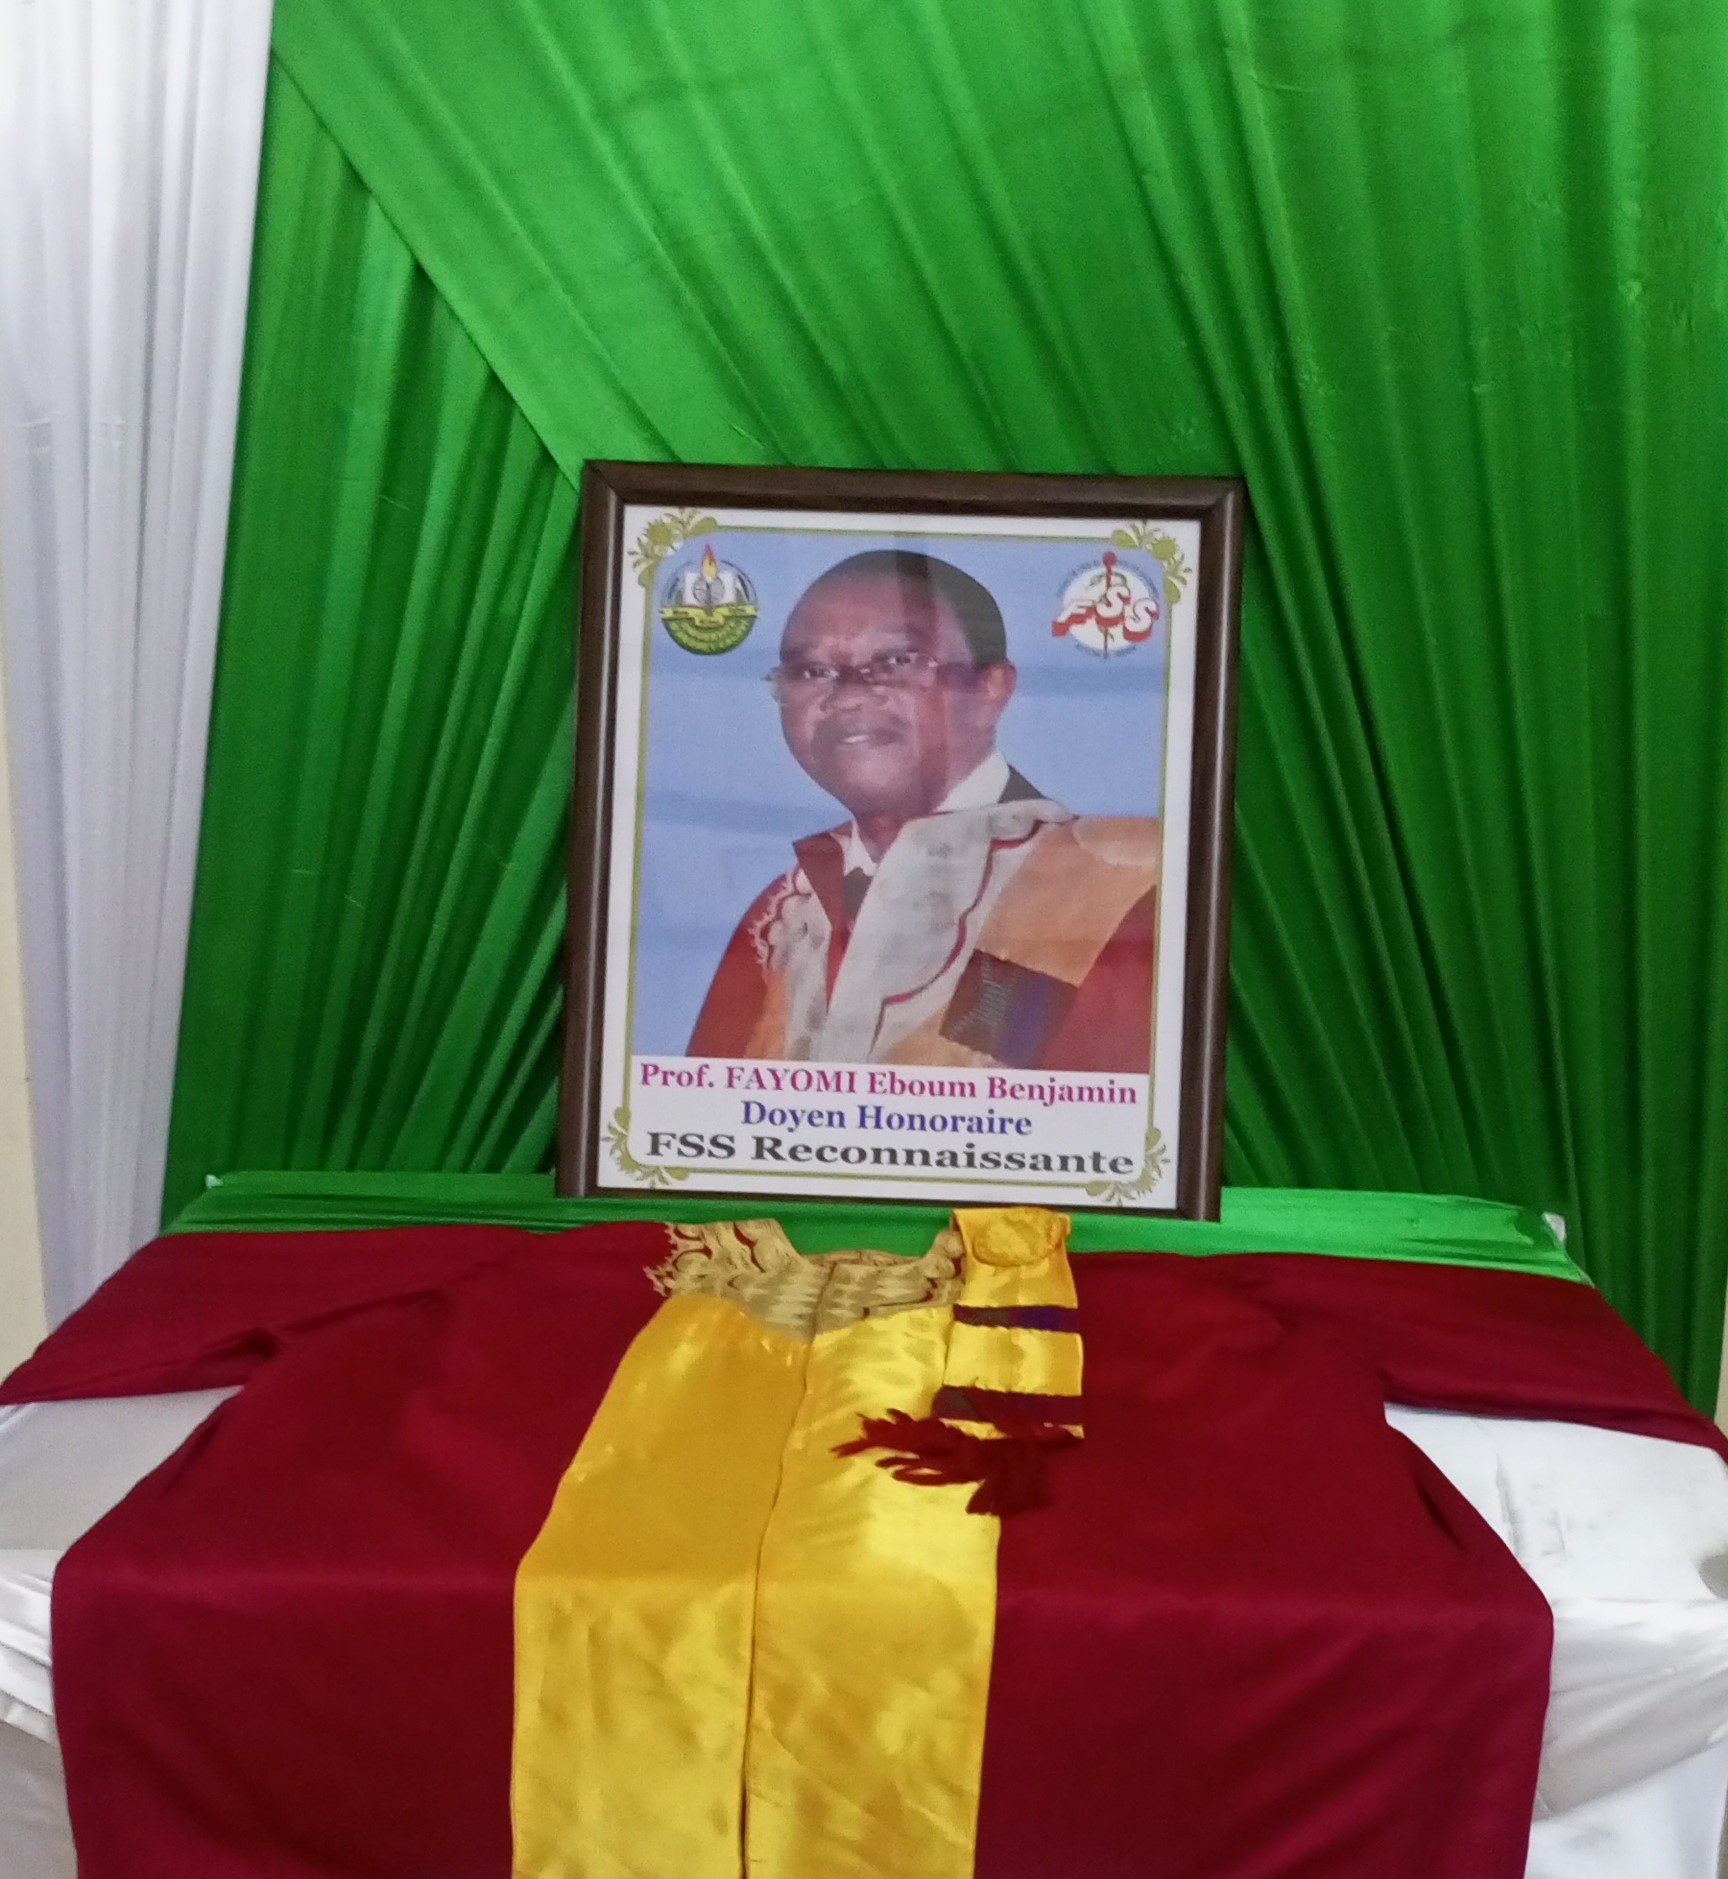 Enseignement supérieur :10 mois après son décès, le professeur Benjamin Eboum Fayomi reçoit les hommages de ses pairs